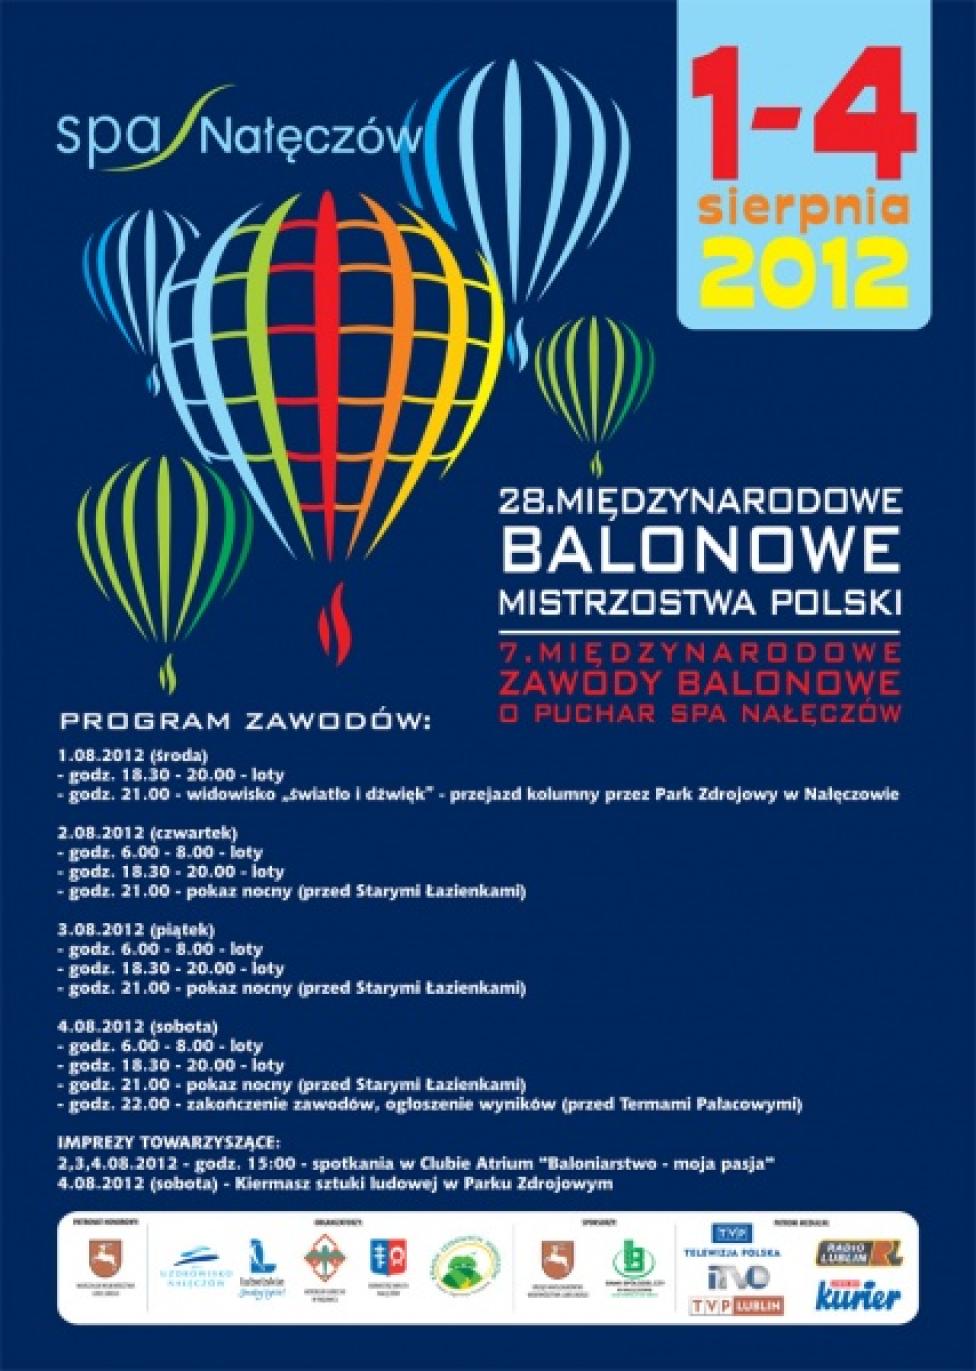 Balonowe Mistrzostwa Polski, Nałęczów 2012 (plakat)